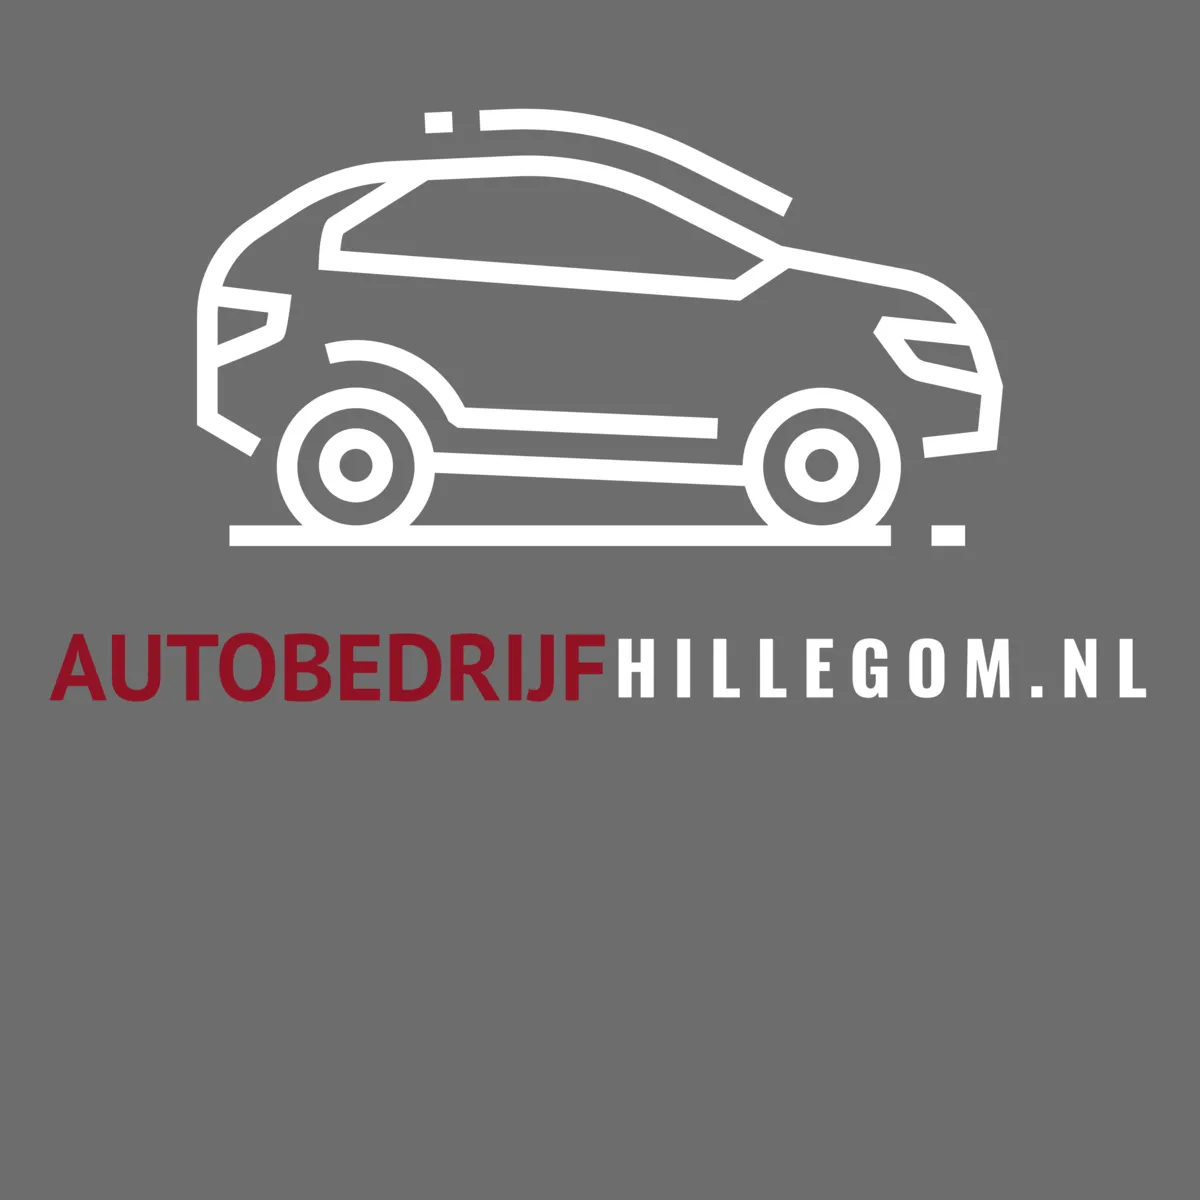 AutobedrijfHillegom.nl